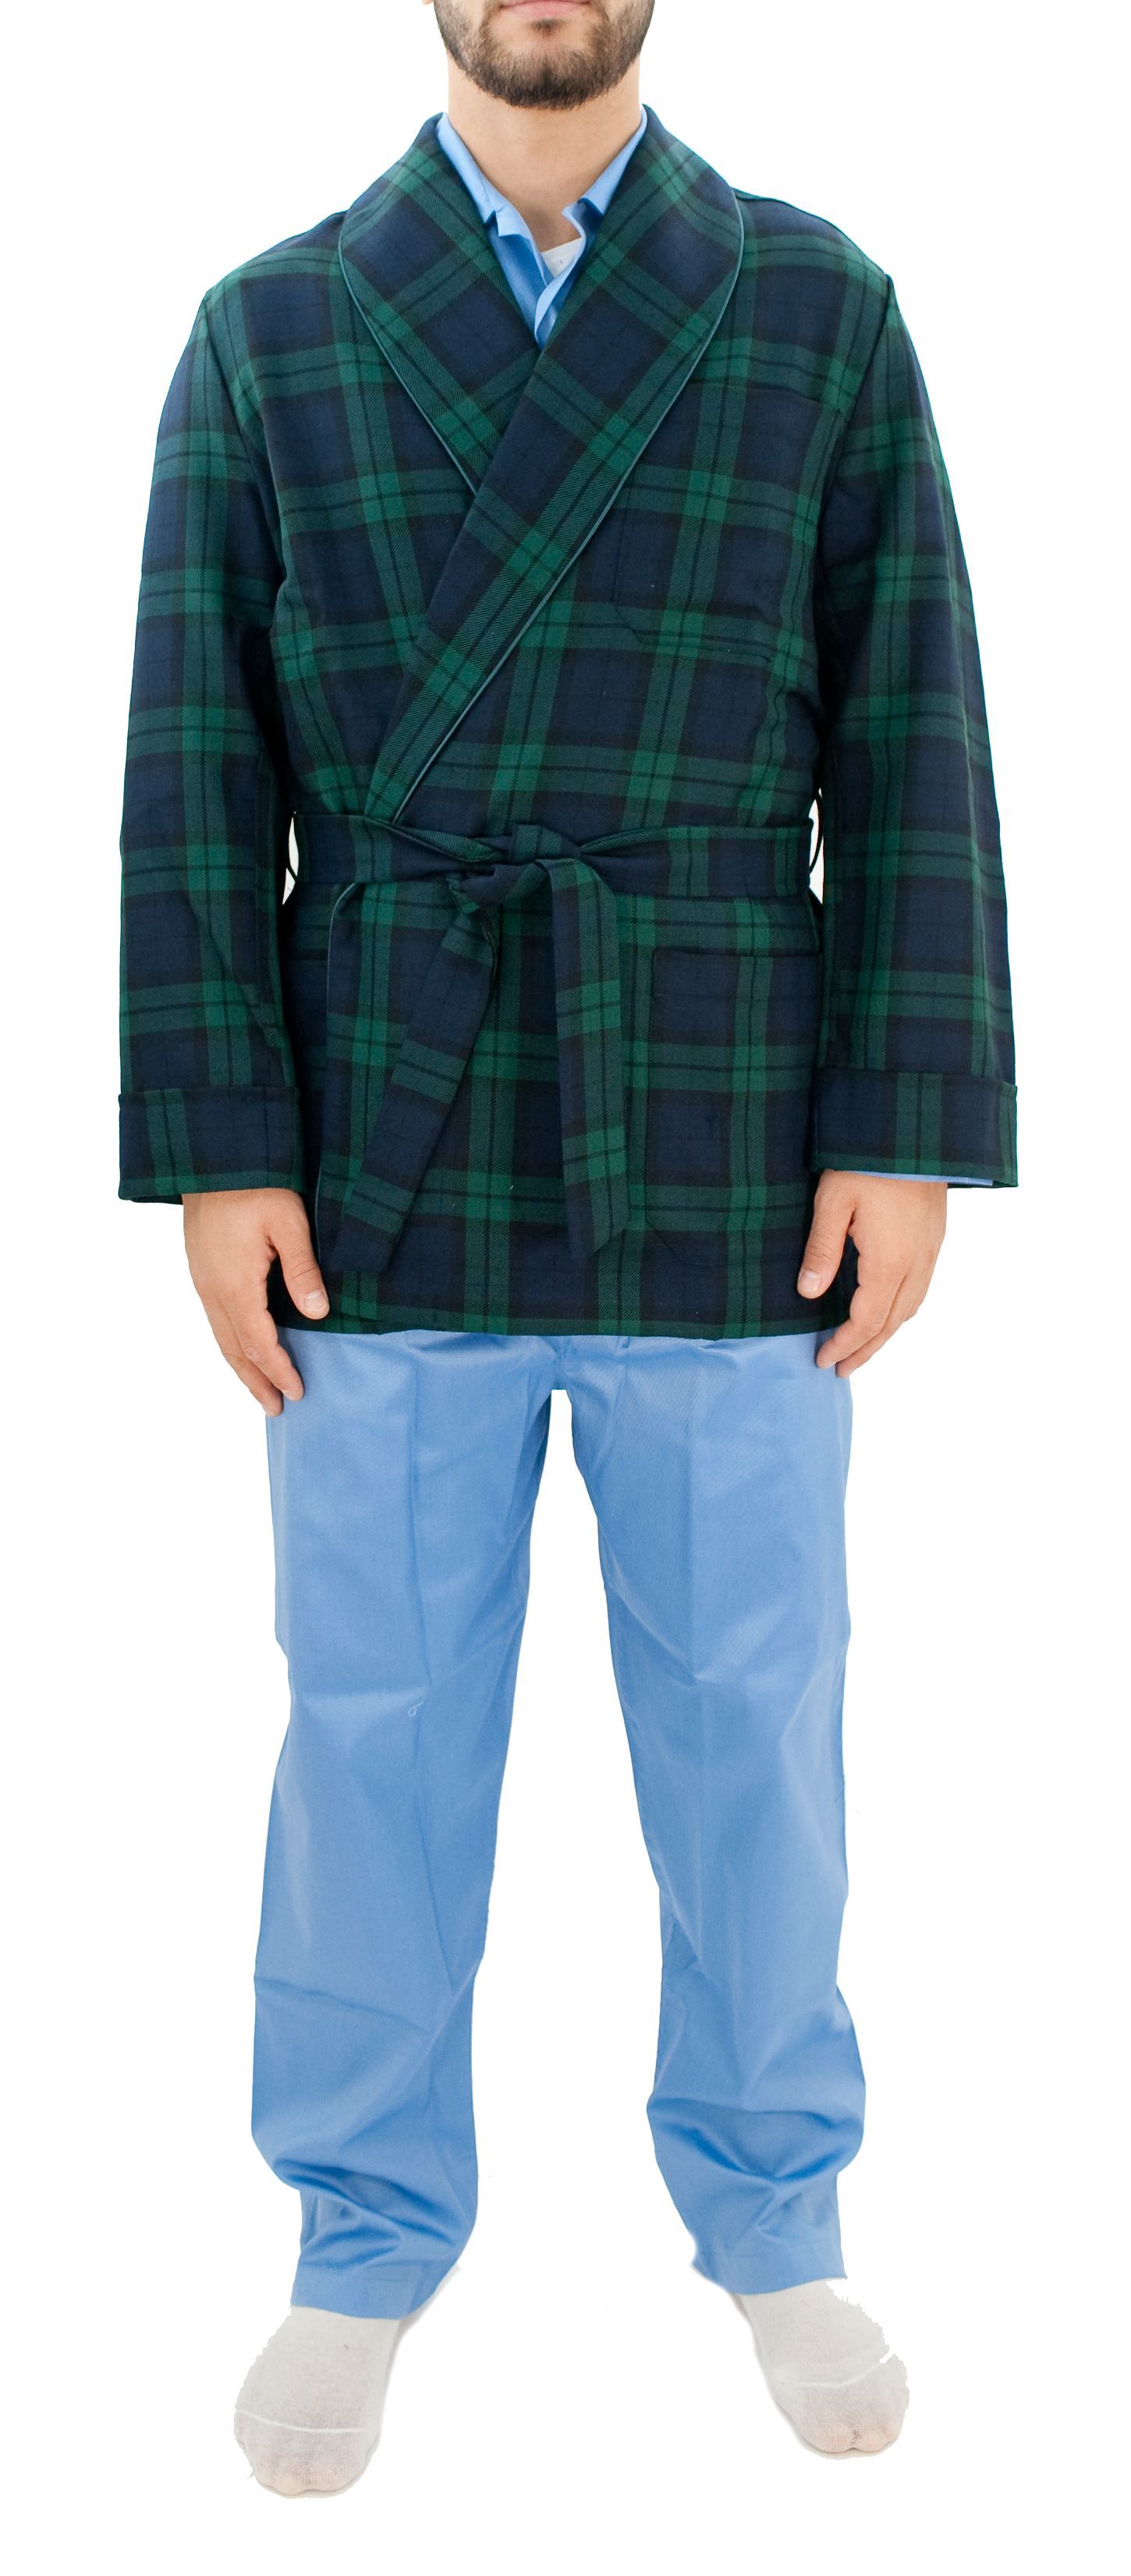 Penombra giacca da camera fondo blu quadri verdi - Floccari Store